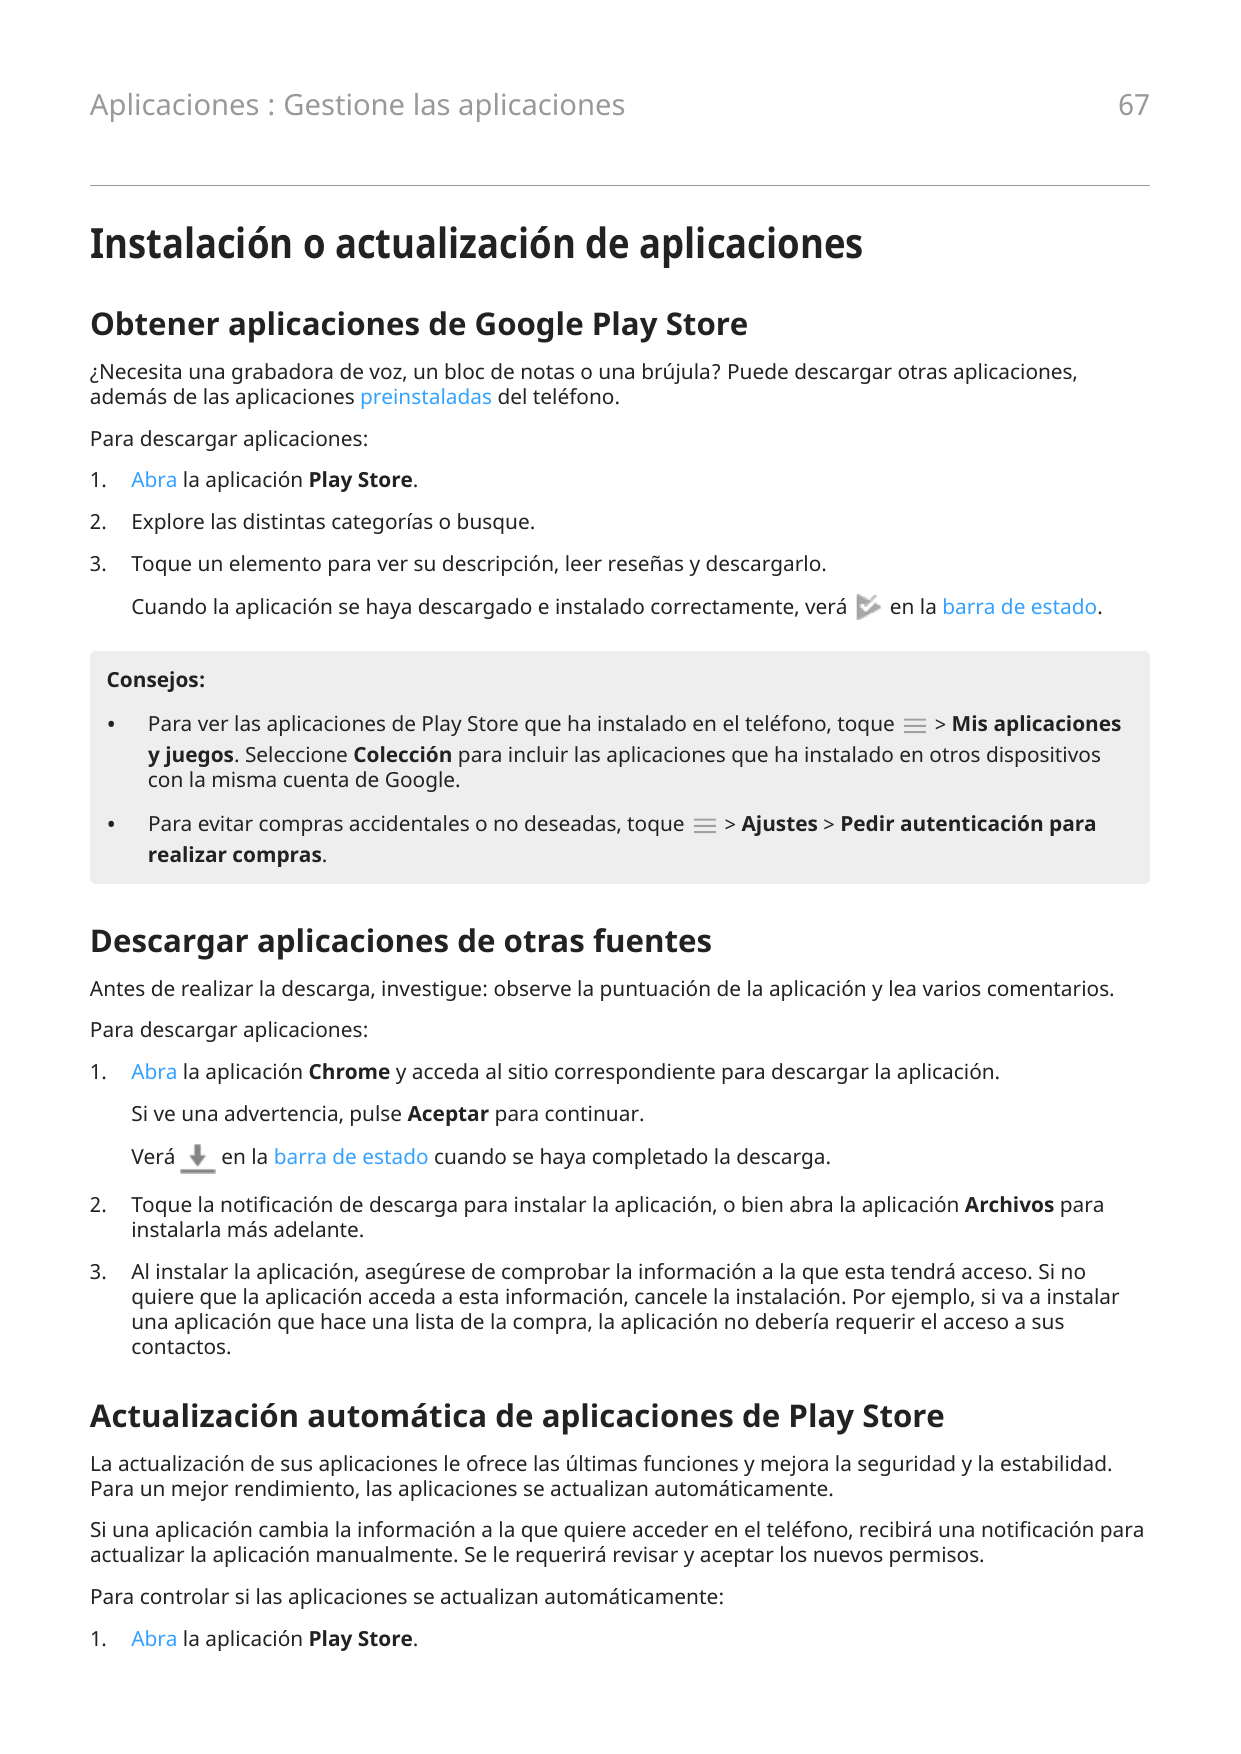 67Aplicaciones : Gestione las aplicacionesInstalación o actualización de aplicacionesObtener aplicaciones de Google Play Store¿N